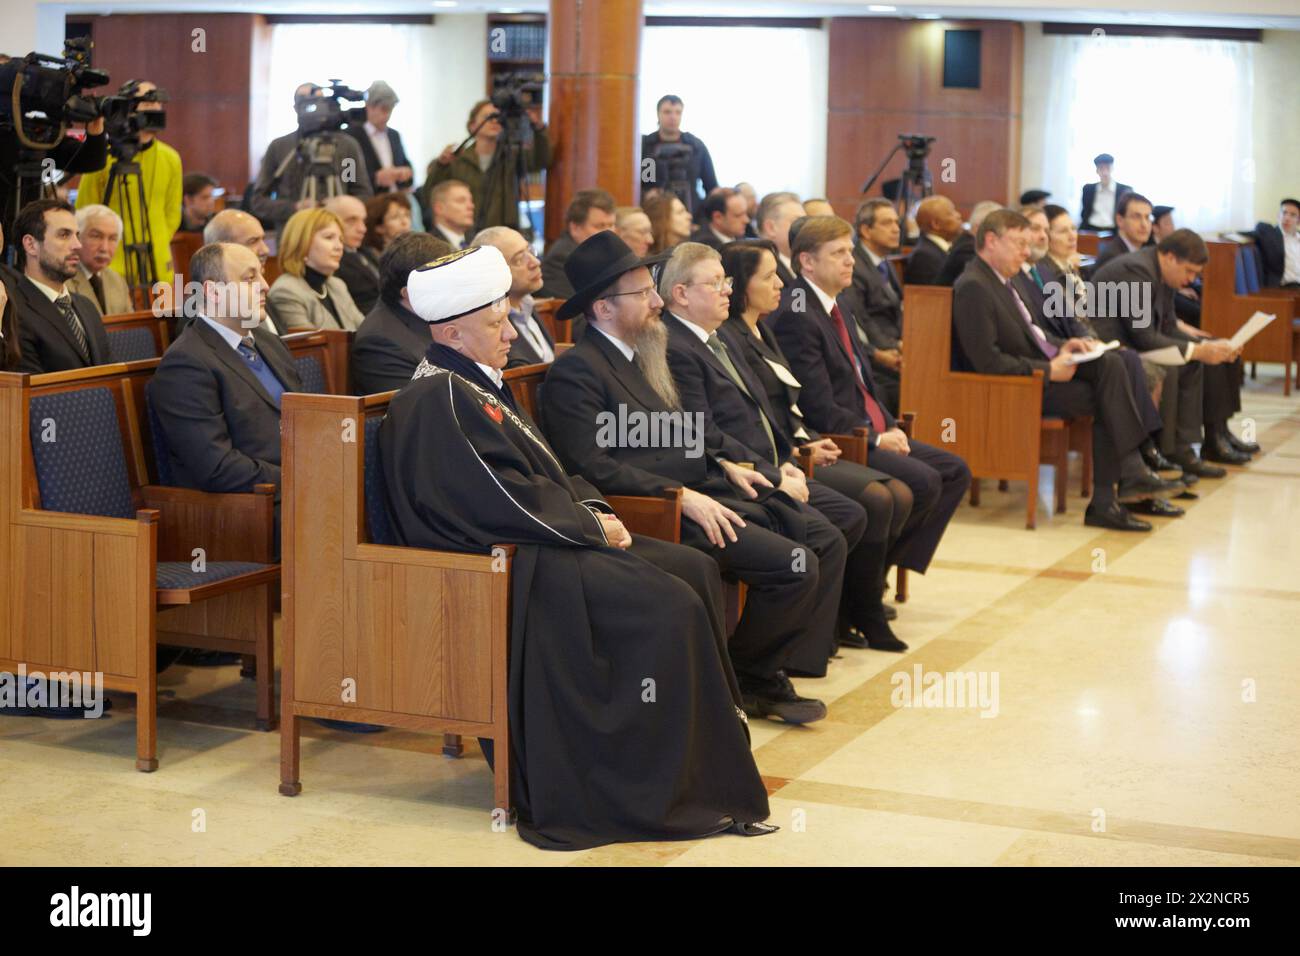 MOSCOU - Jan 27 : journalistes, personnalités religieuses et publiques, ambassadeurs des puissances européennes à la synagogue de Moscou Beis Menachem dans l'Holocau international Banque D'Images